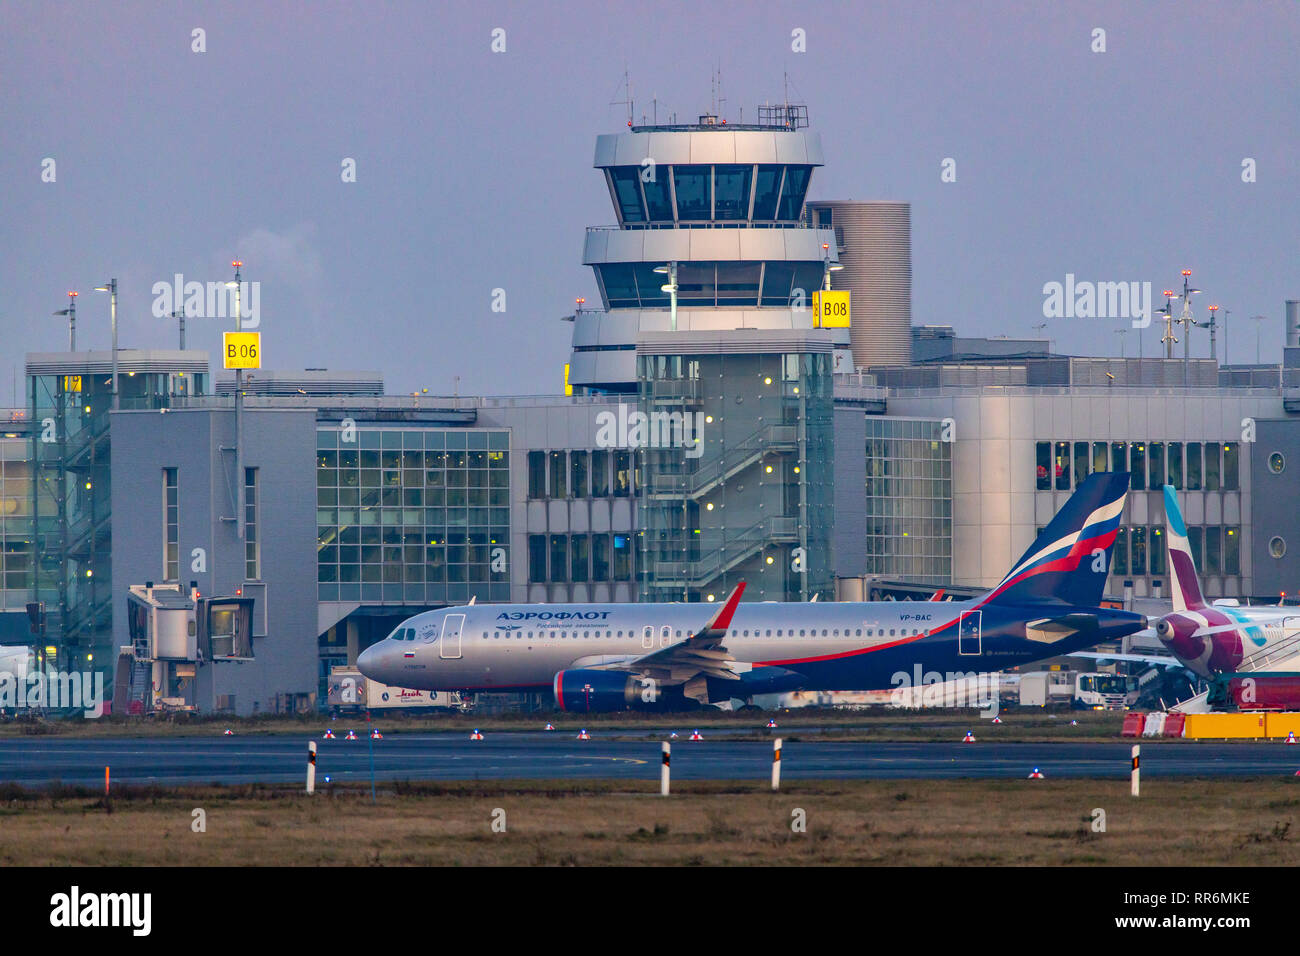 DŸsseldorf Aeroporto Internazionale, DUS, torre di controllo del traffico aereo, controllo del piazzale di sosta, Aeroflot, Airbus A320-214, sulla pista di rullaggio, Foto Stock